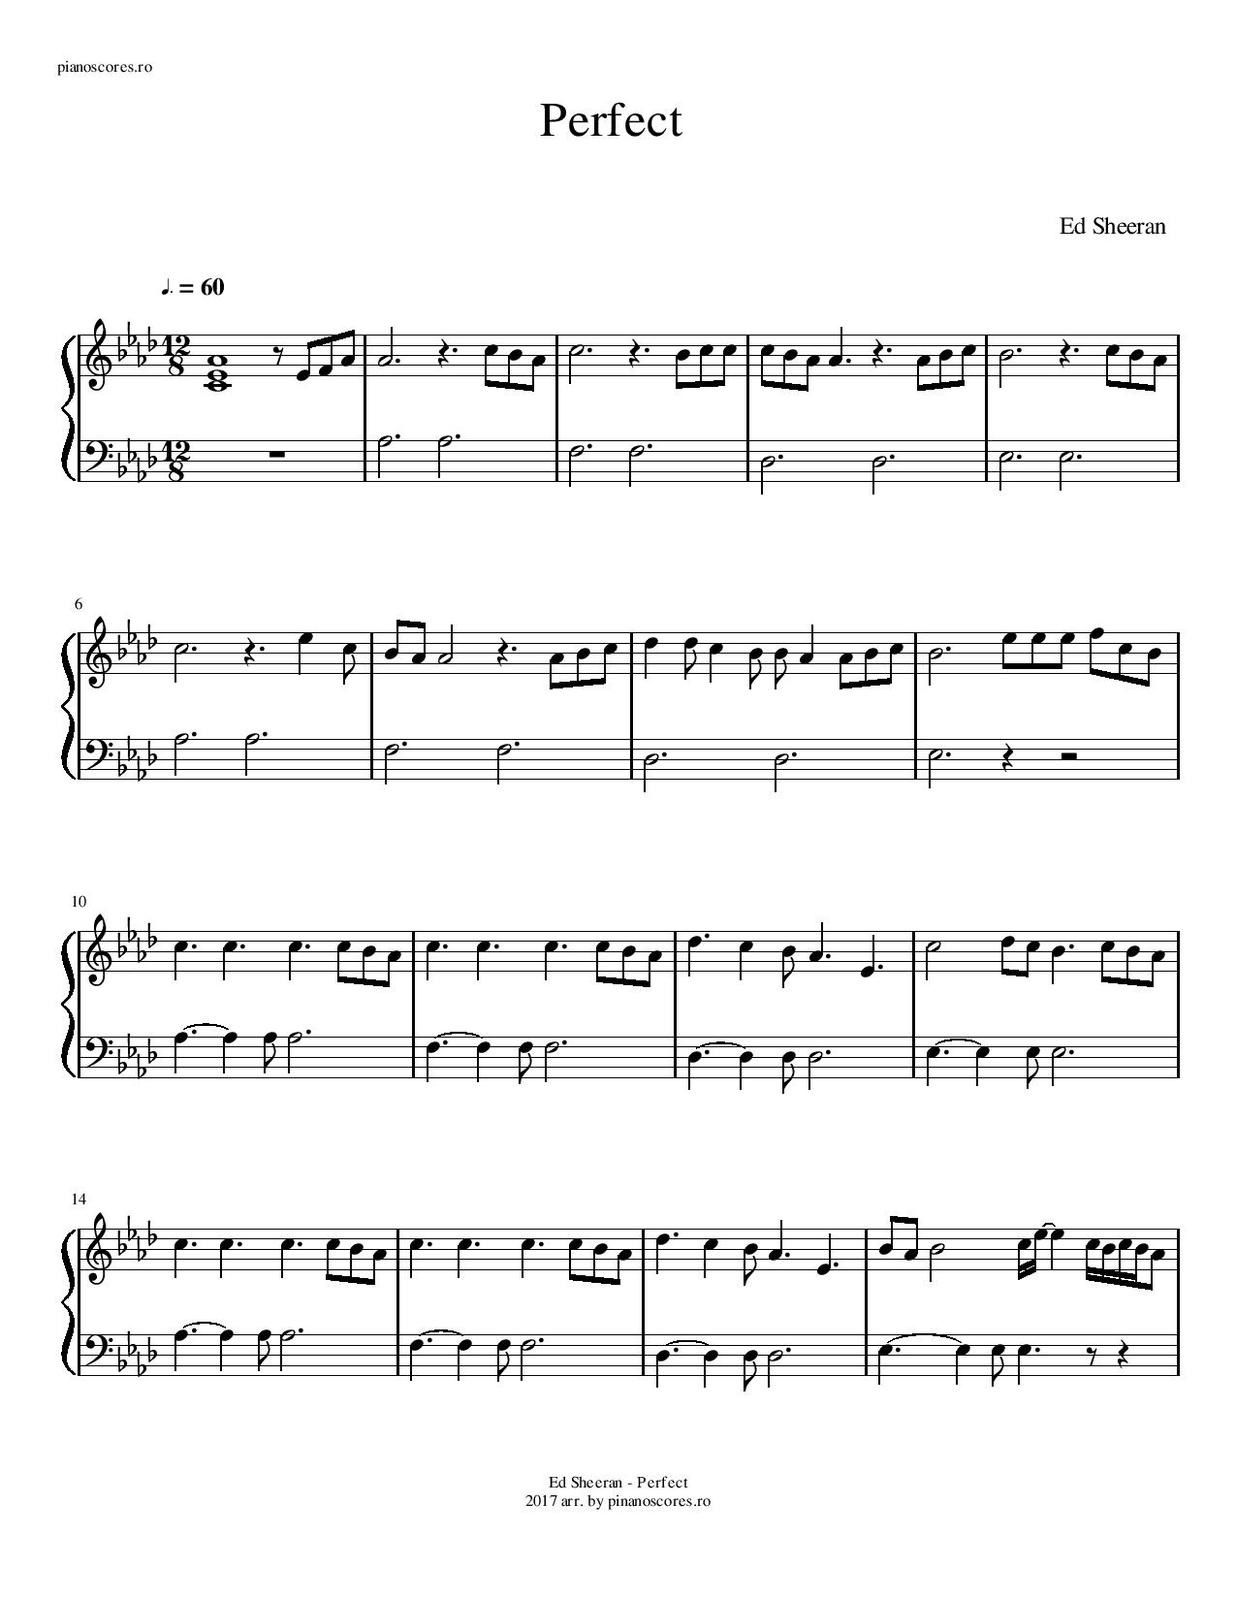 Partitura para Piano Perfect  Ed Sheeran - Las Notas De Nana